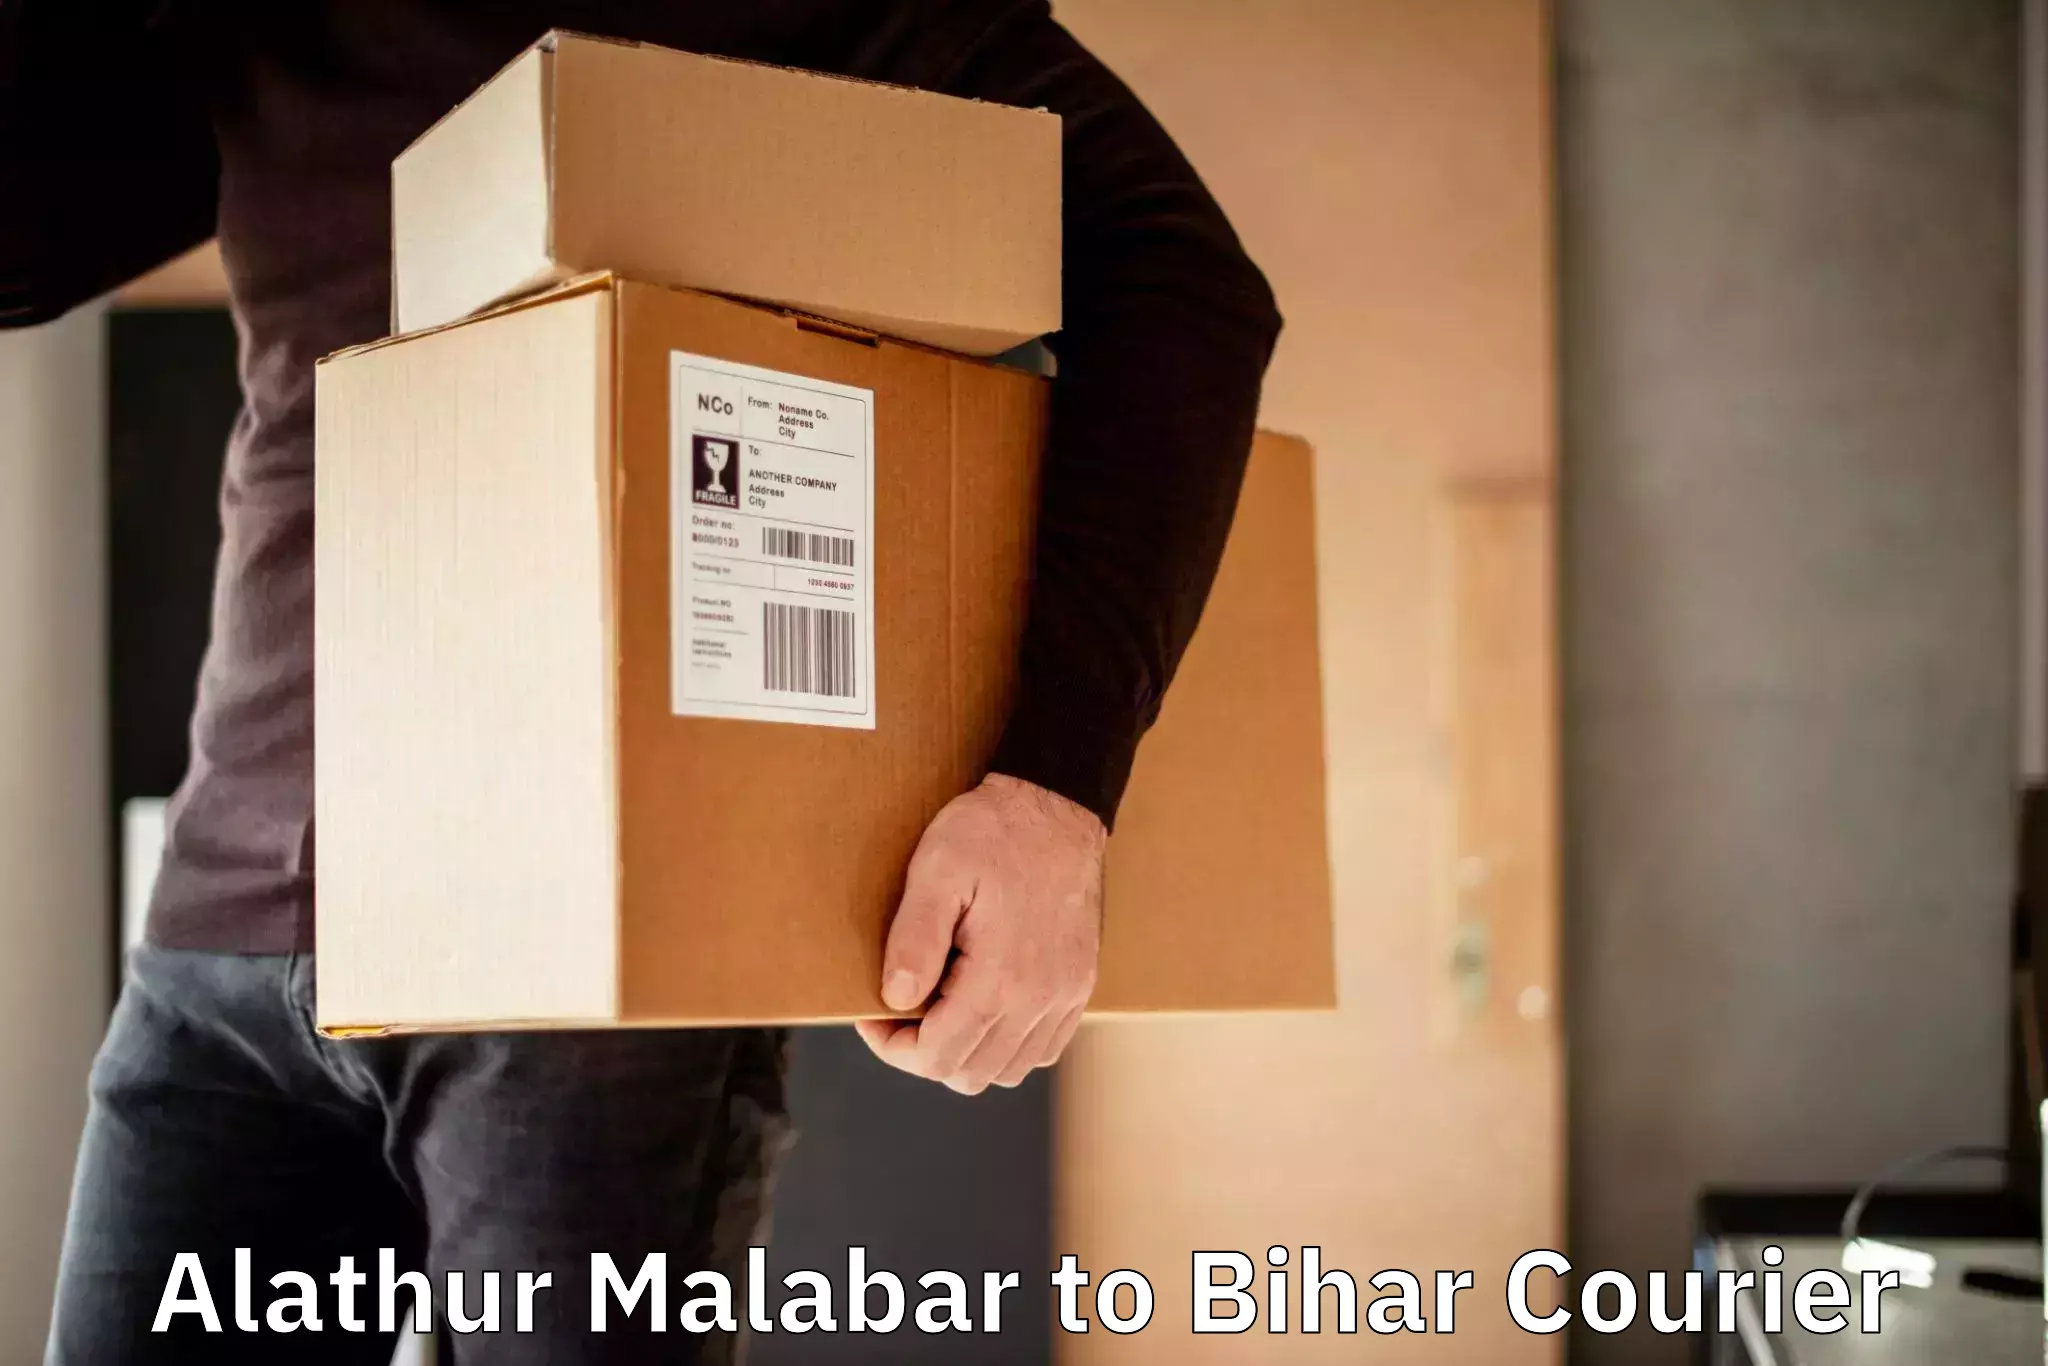 E-commerce shipping partnerships Alathur Malabar to Bikramganj